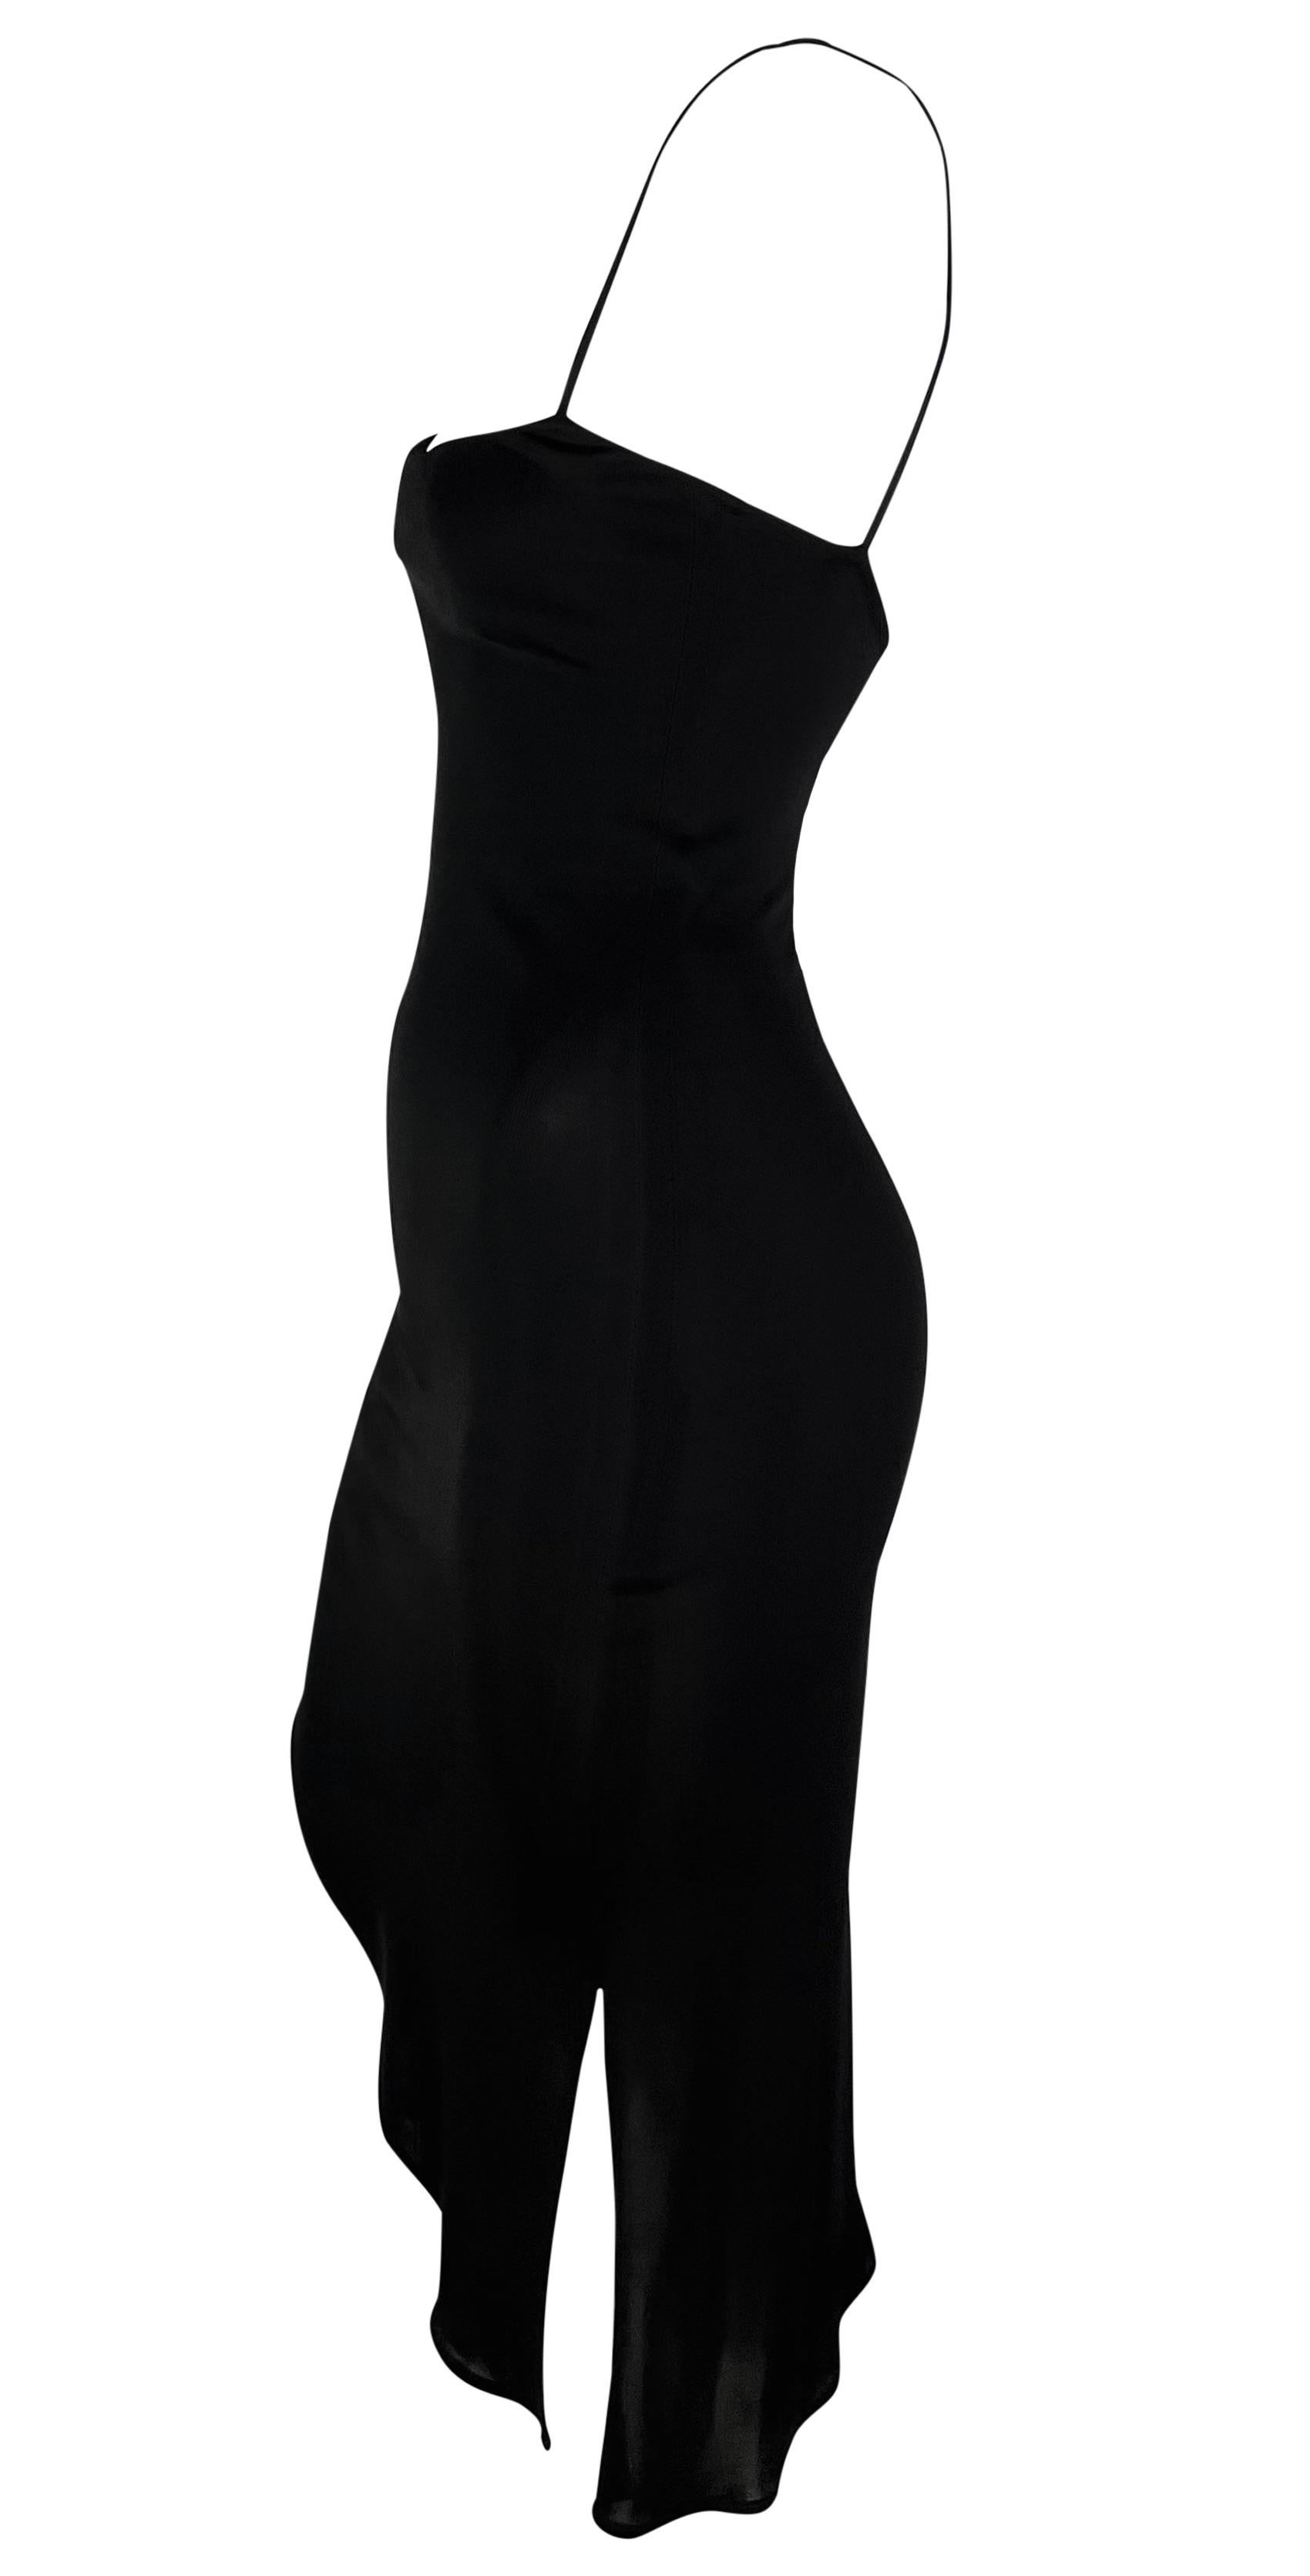 Dieses verführerische, schwarze, asymmetrische Slip-Kleid von Yigal Azrouel aus den frühen 2000er Jahren ist der Inbegriff des sexy kleinen Schwarzen für eine Nacht. Der Slip hat zarte Spaghettiträger, einen schicken quadratischen Ausschnitt und